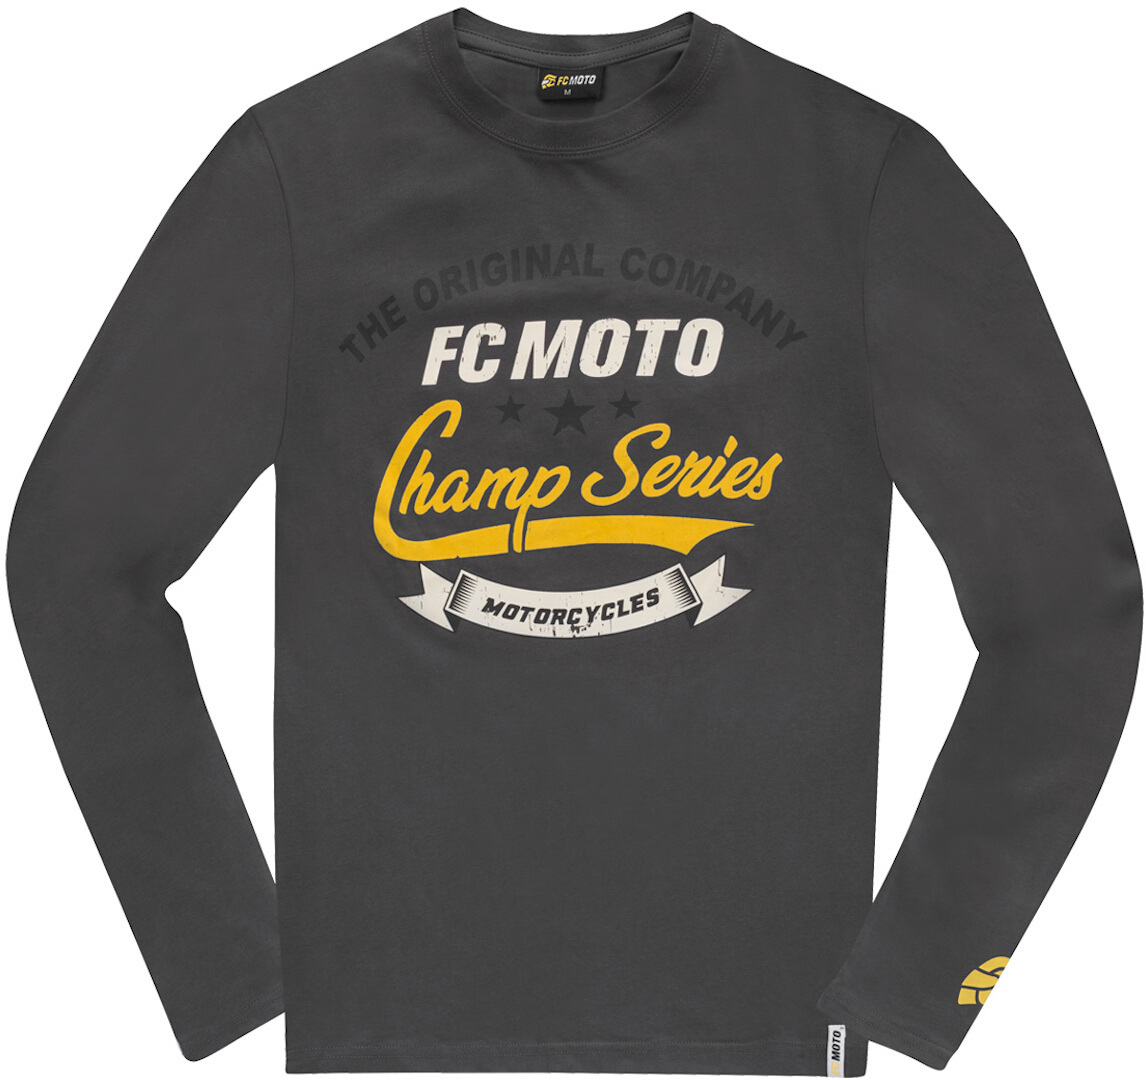 Рубашка FC-Moto Champ Series с длинными рукавами, темно-синий рубашка с длинными рукавами и принтом 1 s синий